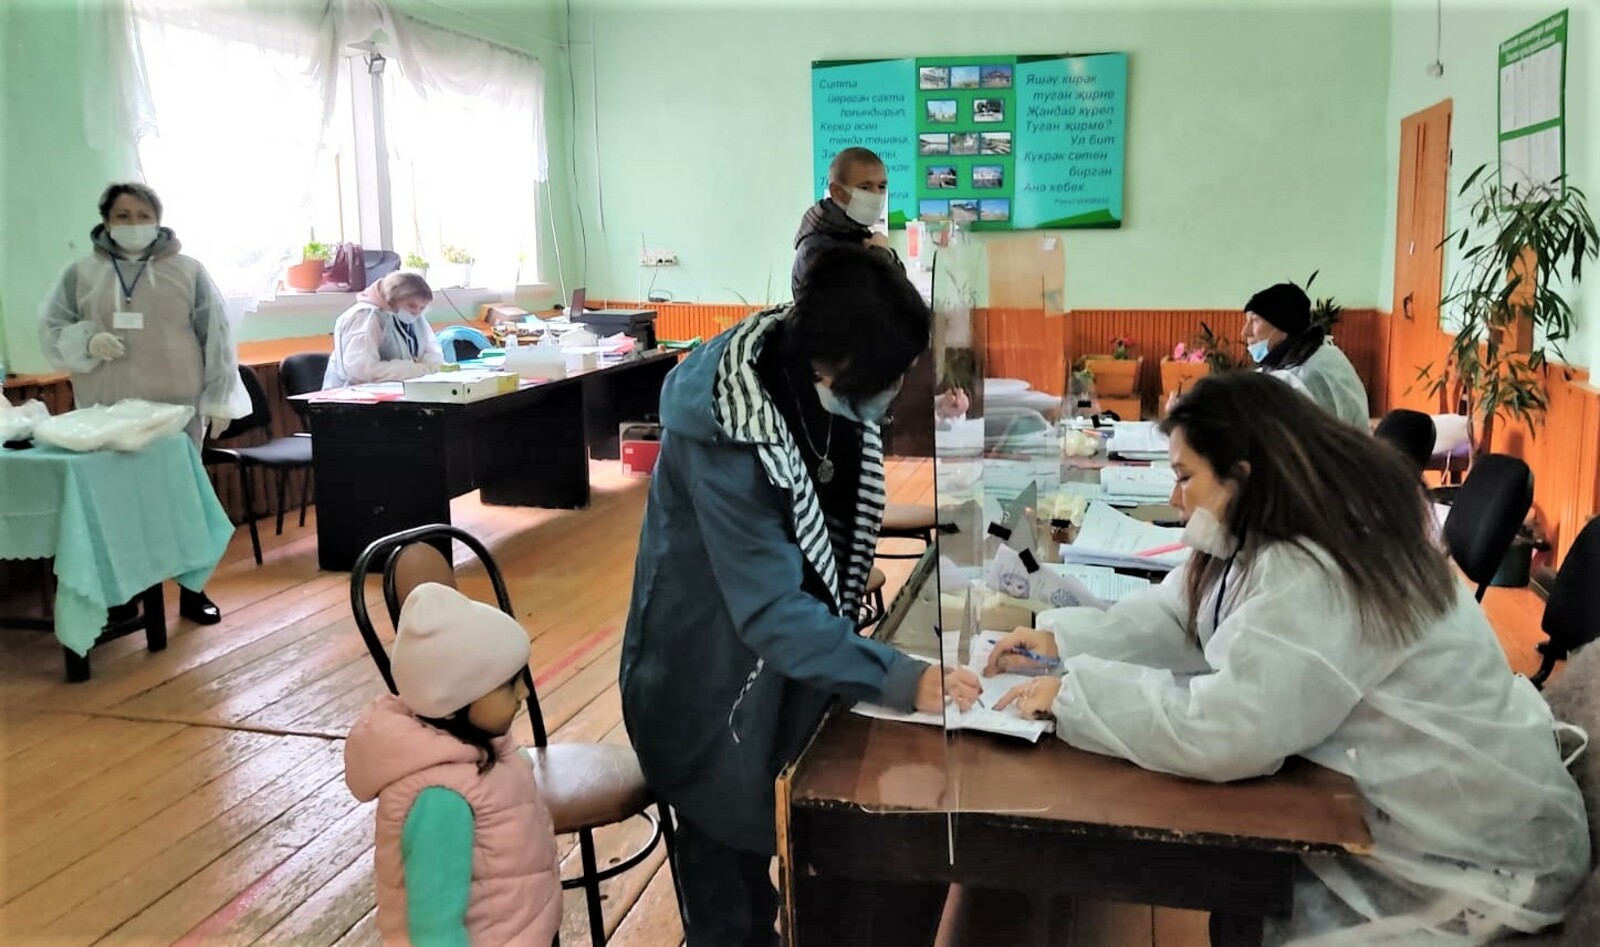 Жители Иткинеевского сельского поселения Янаульского района к выборам всегда относились ответственно